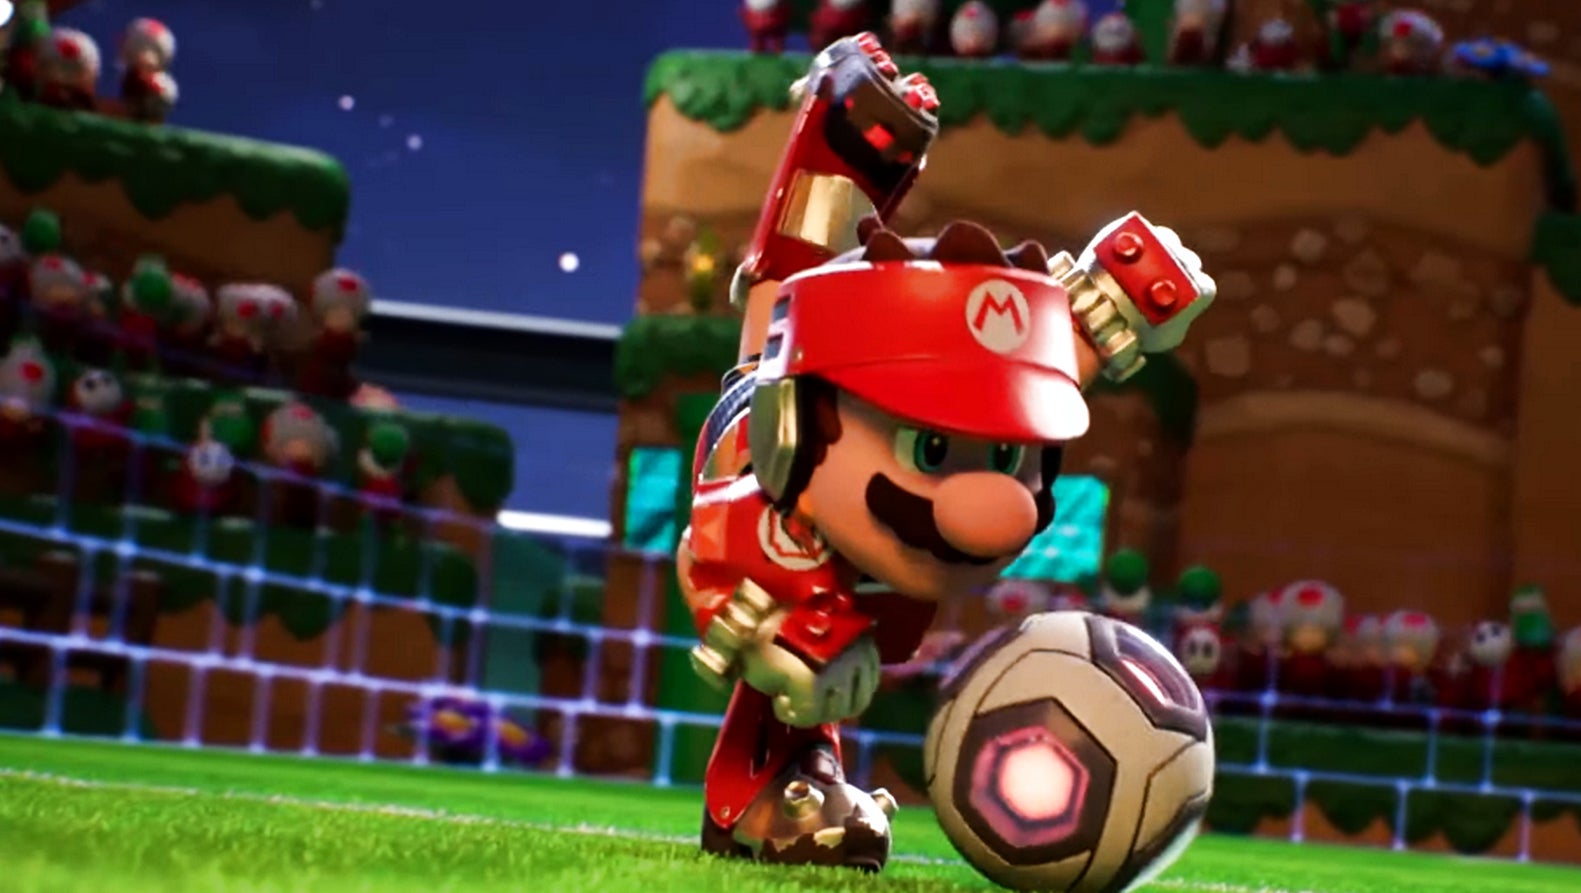 Bilder zu Mario Strikers: Battle League Football angekündigt